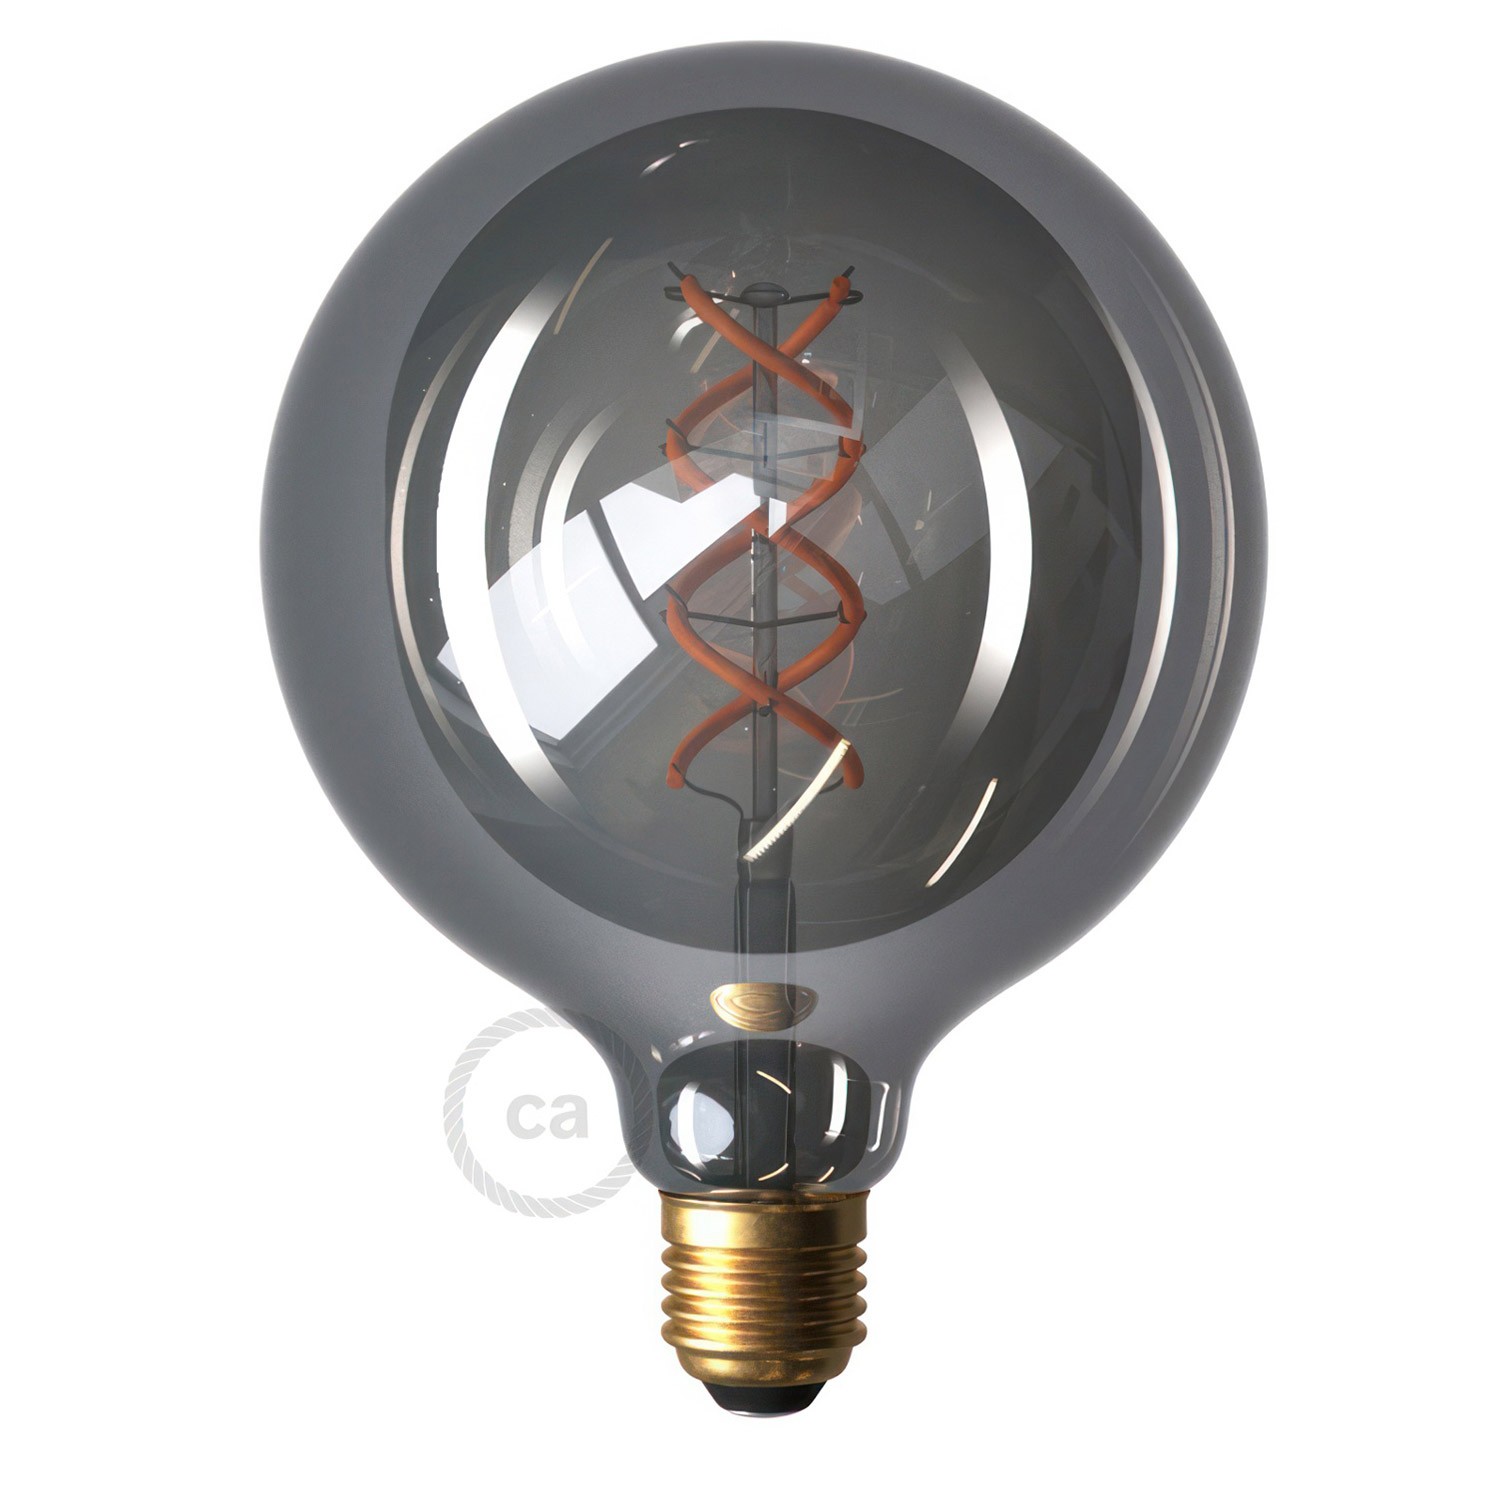 EIVA ELEGANT - Závesná lampa do exteriéru IP65 s textilným káblom, silikónovou rozetou a objímkou, vodeodolná